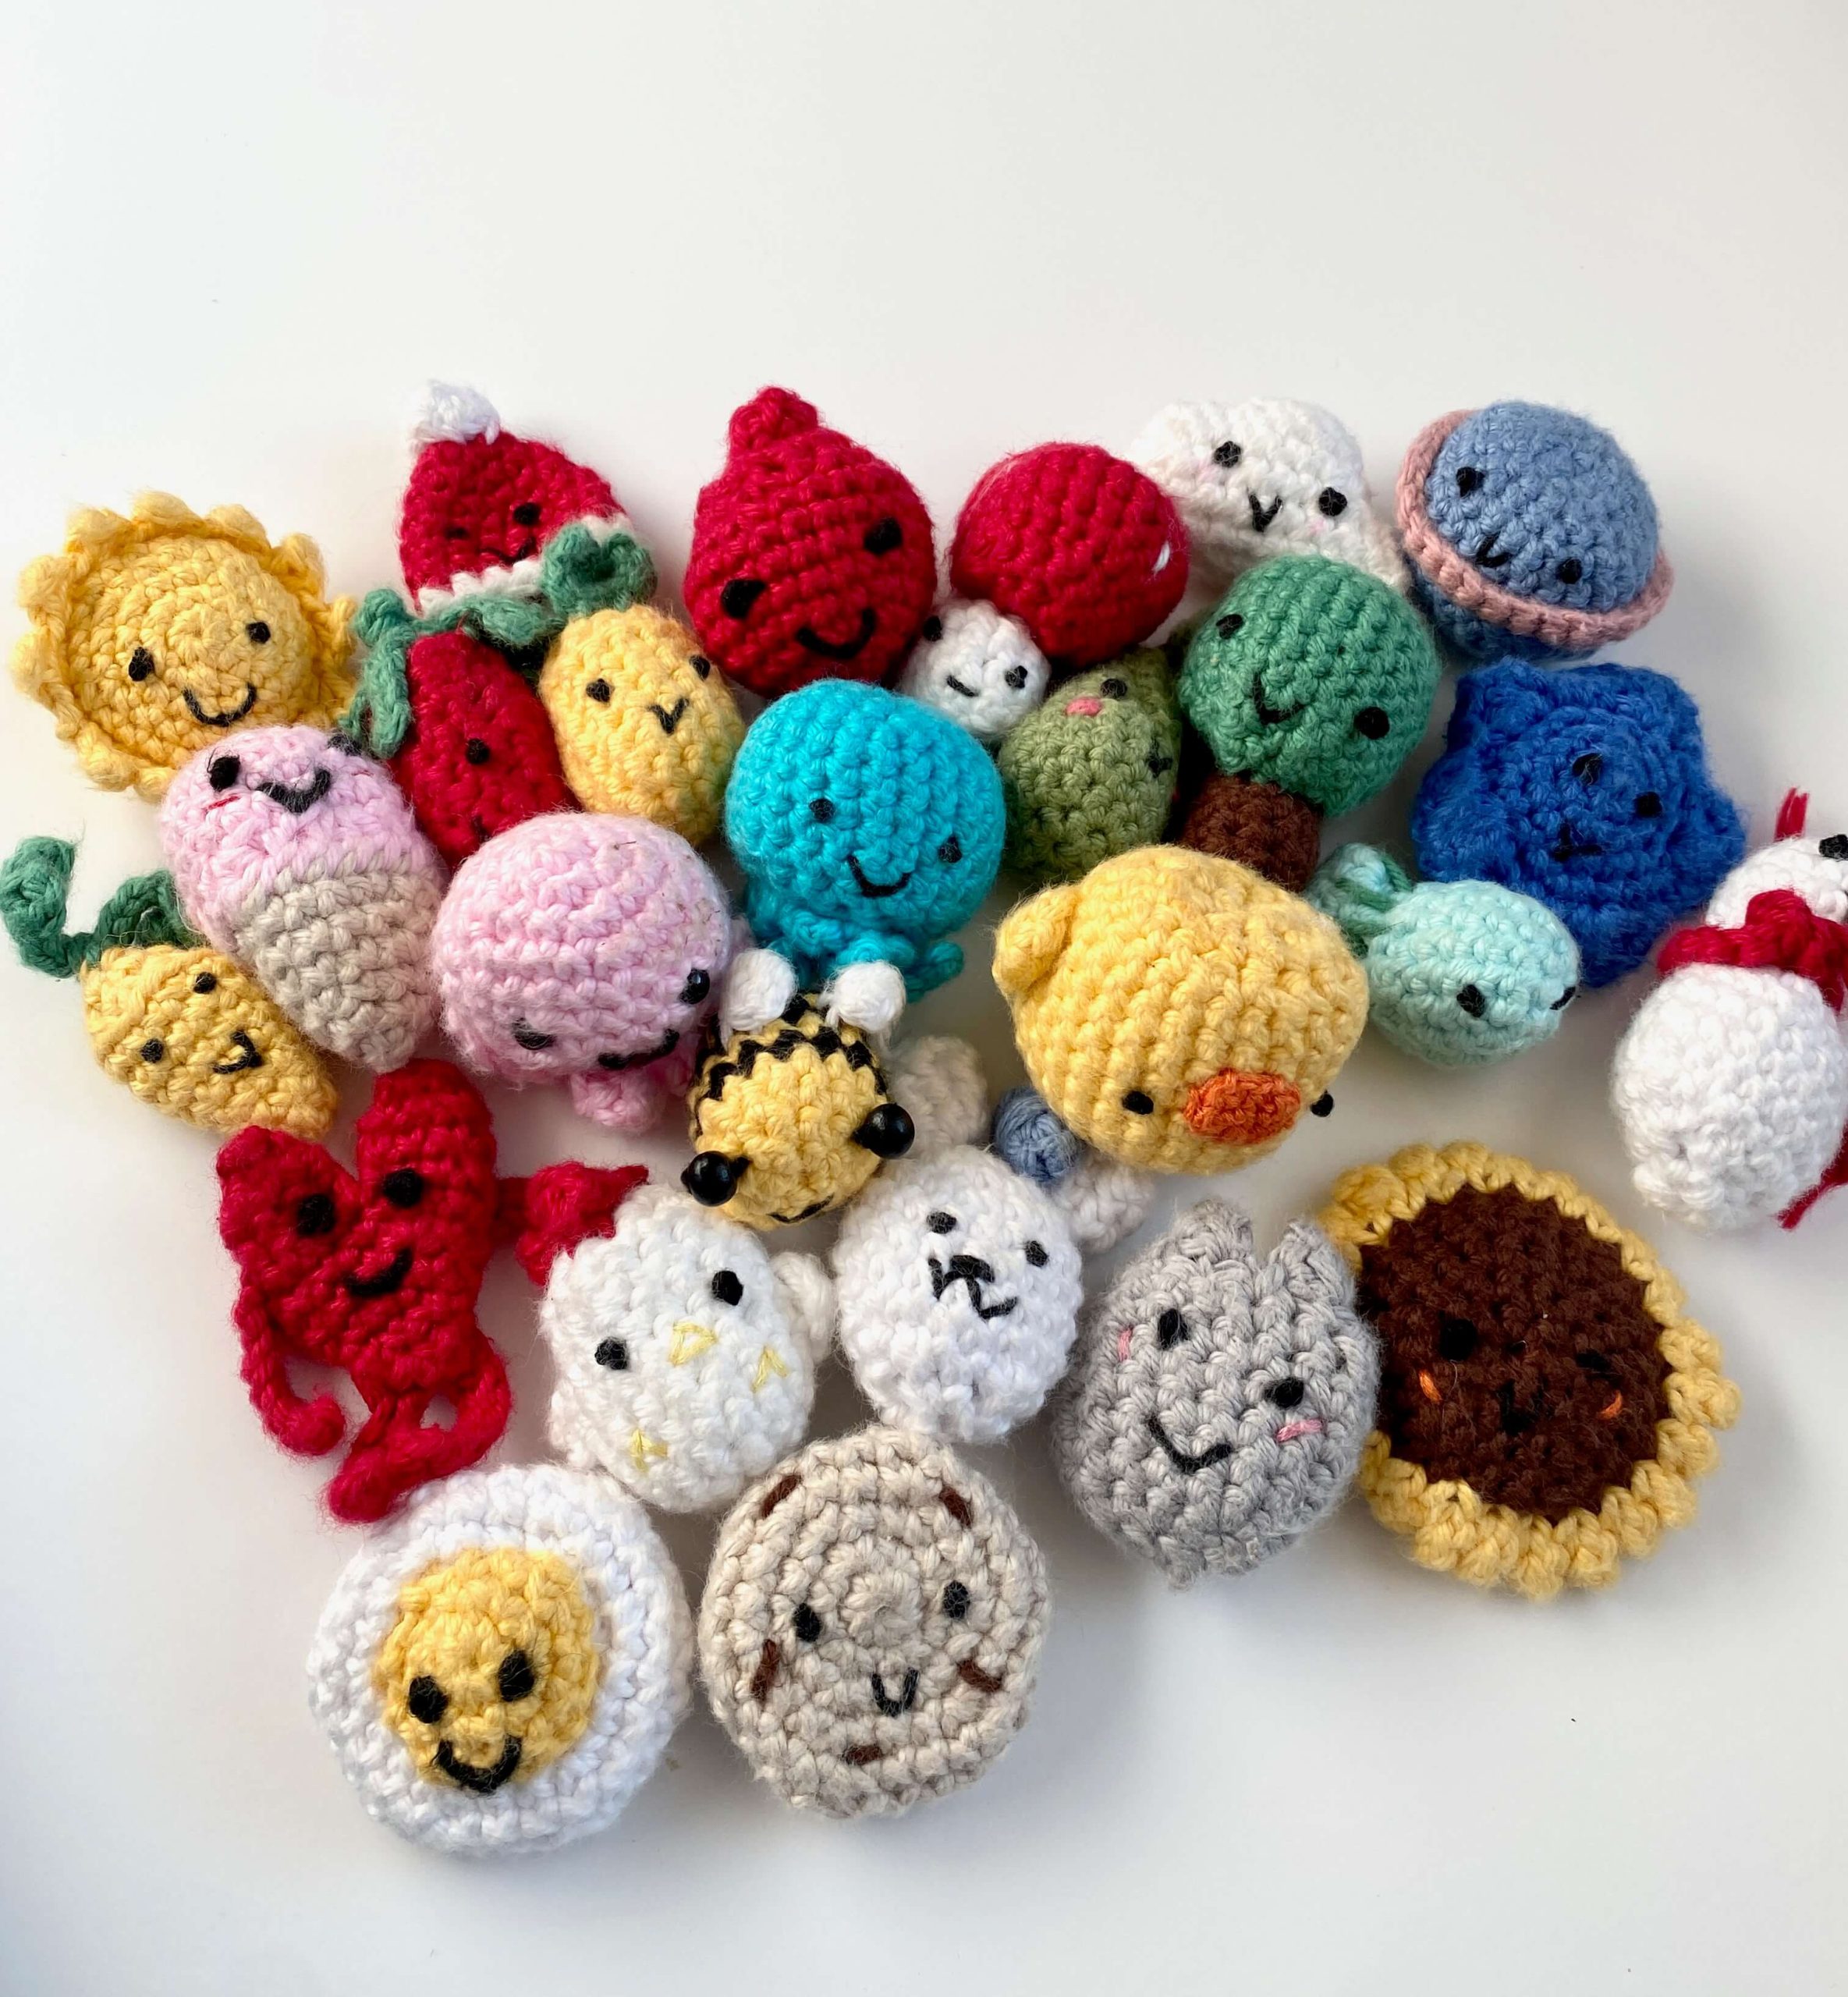 Cute Crochet Car Amigurumi Free Pattern – Amigurumi